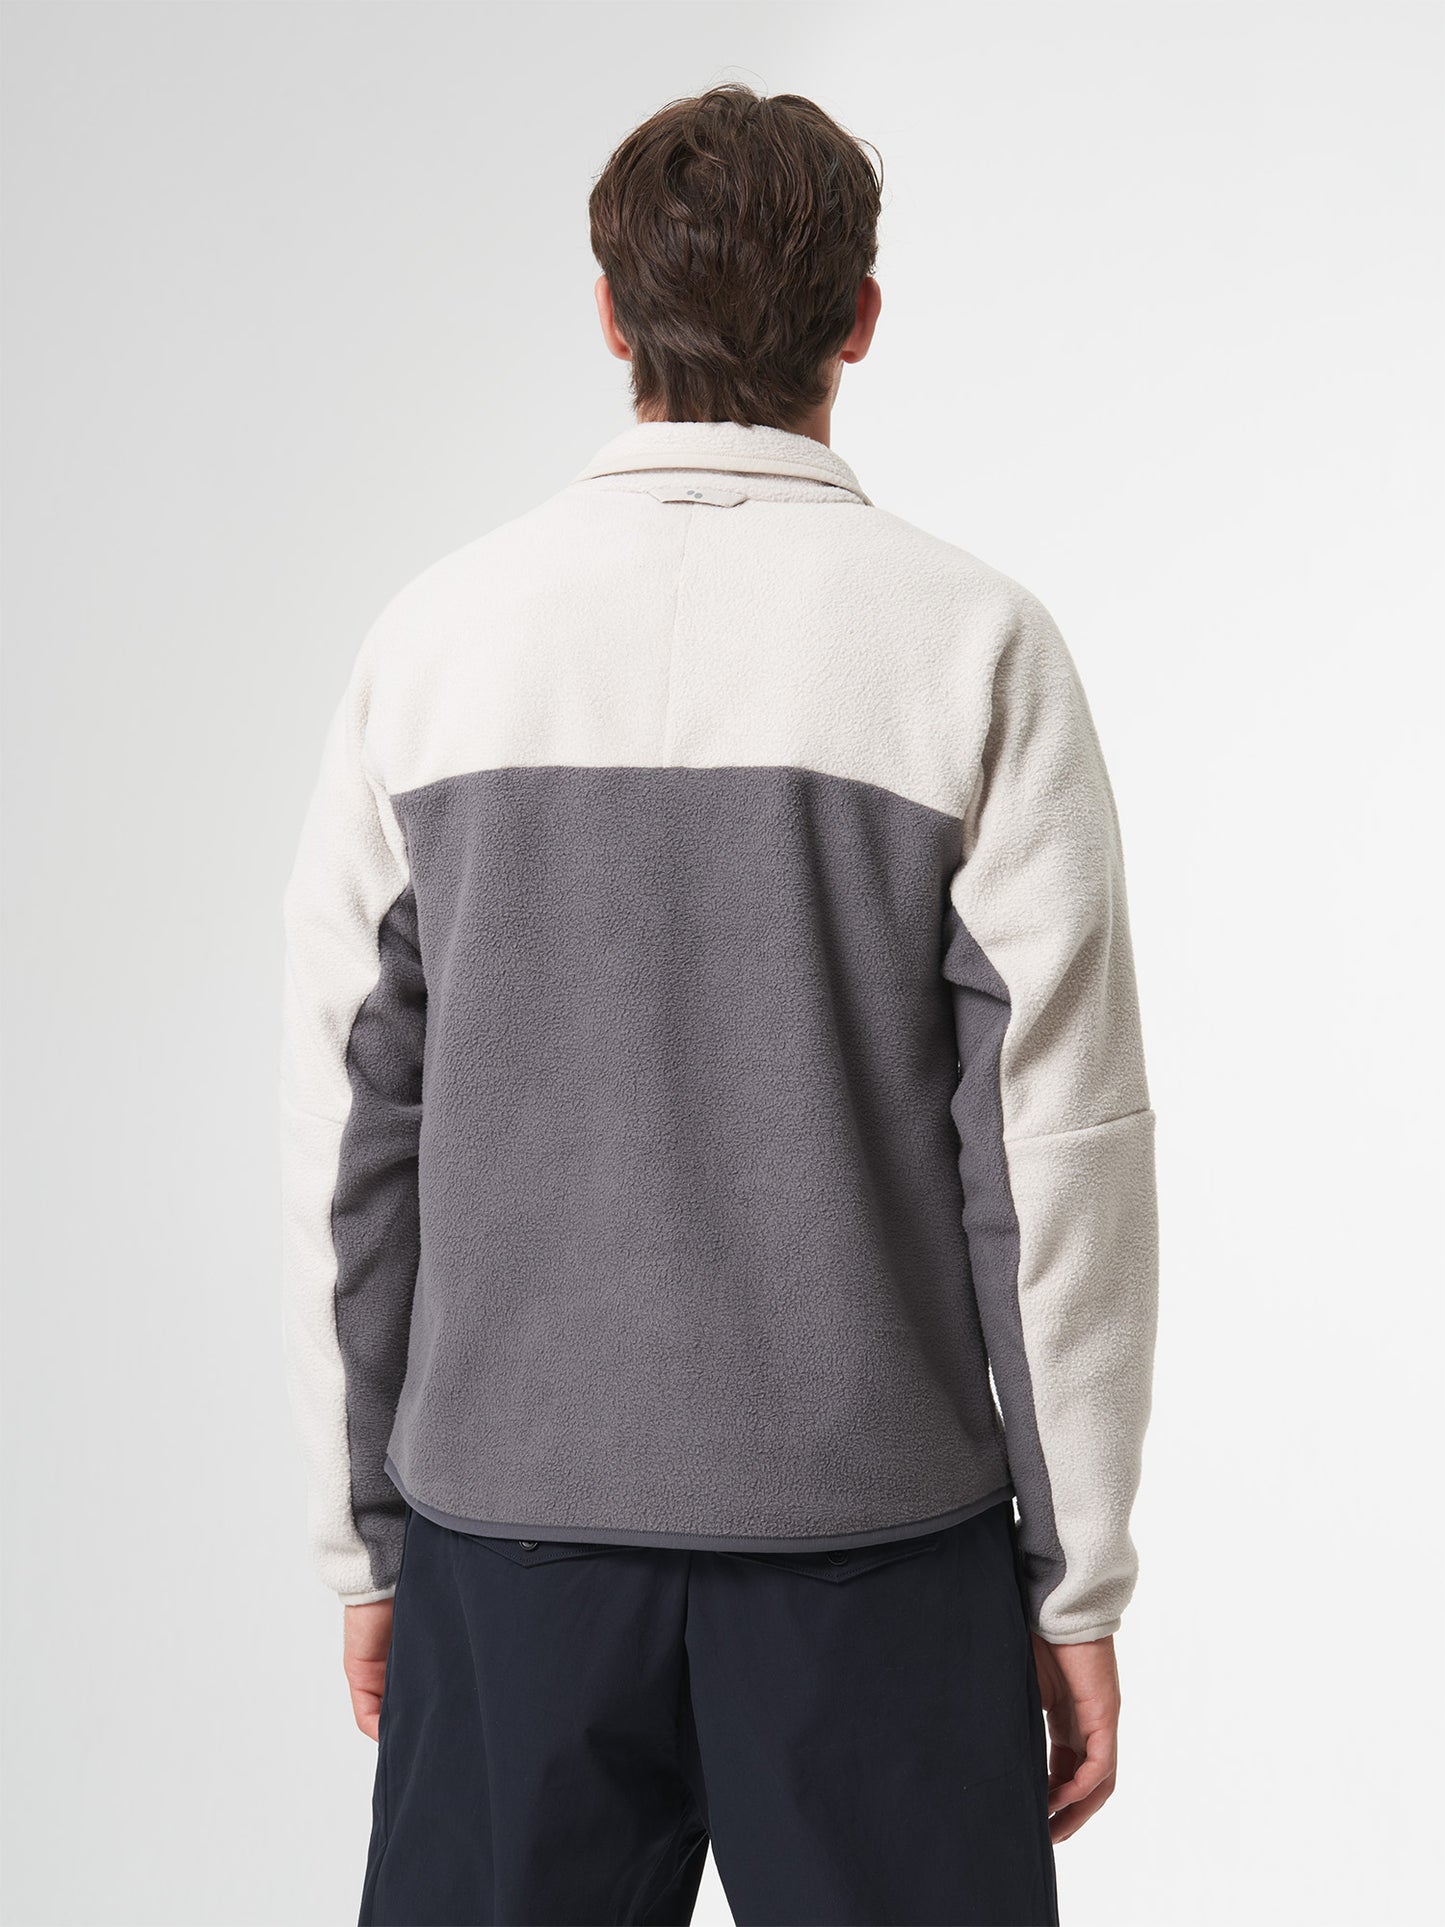 pinqponq-Fleece-Pullover-Tune-Beige-unisex-model-back